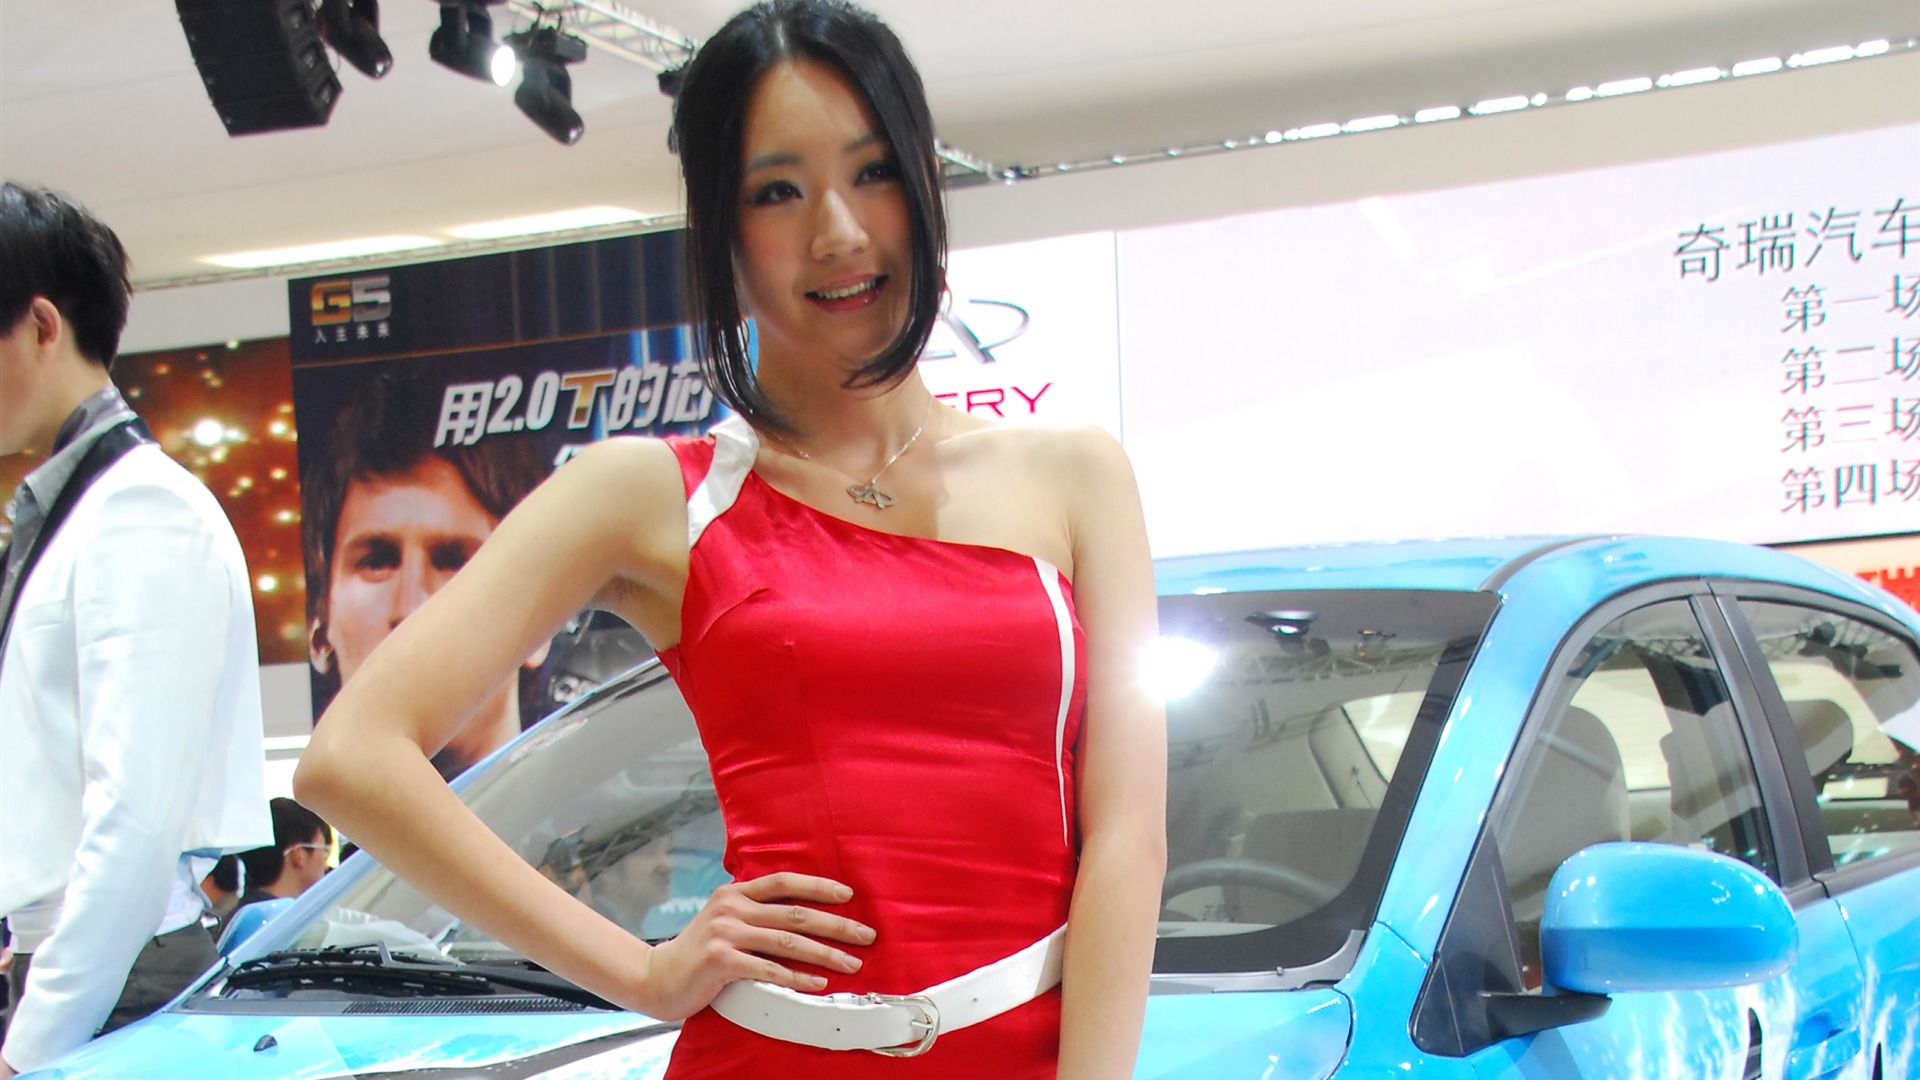 2010 Beijing International Auto Show (3) (z321x123 works) #31 - 1920x1080